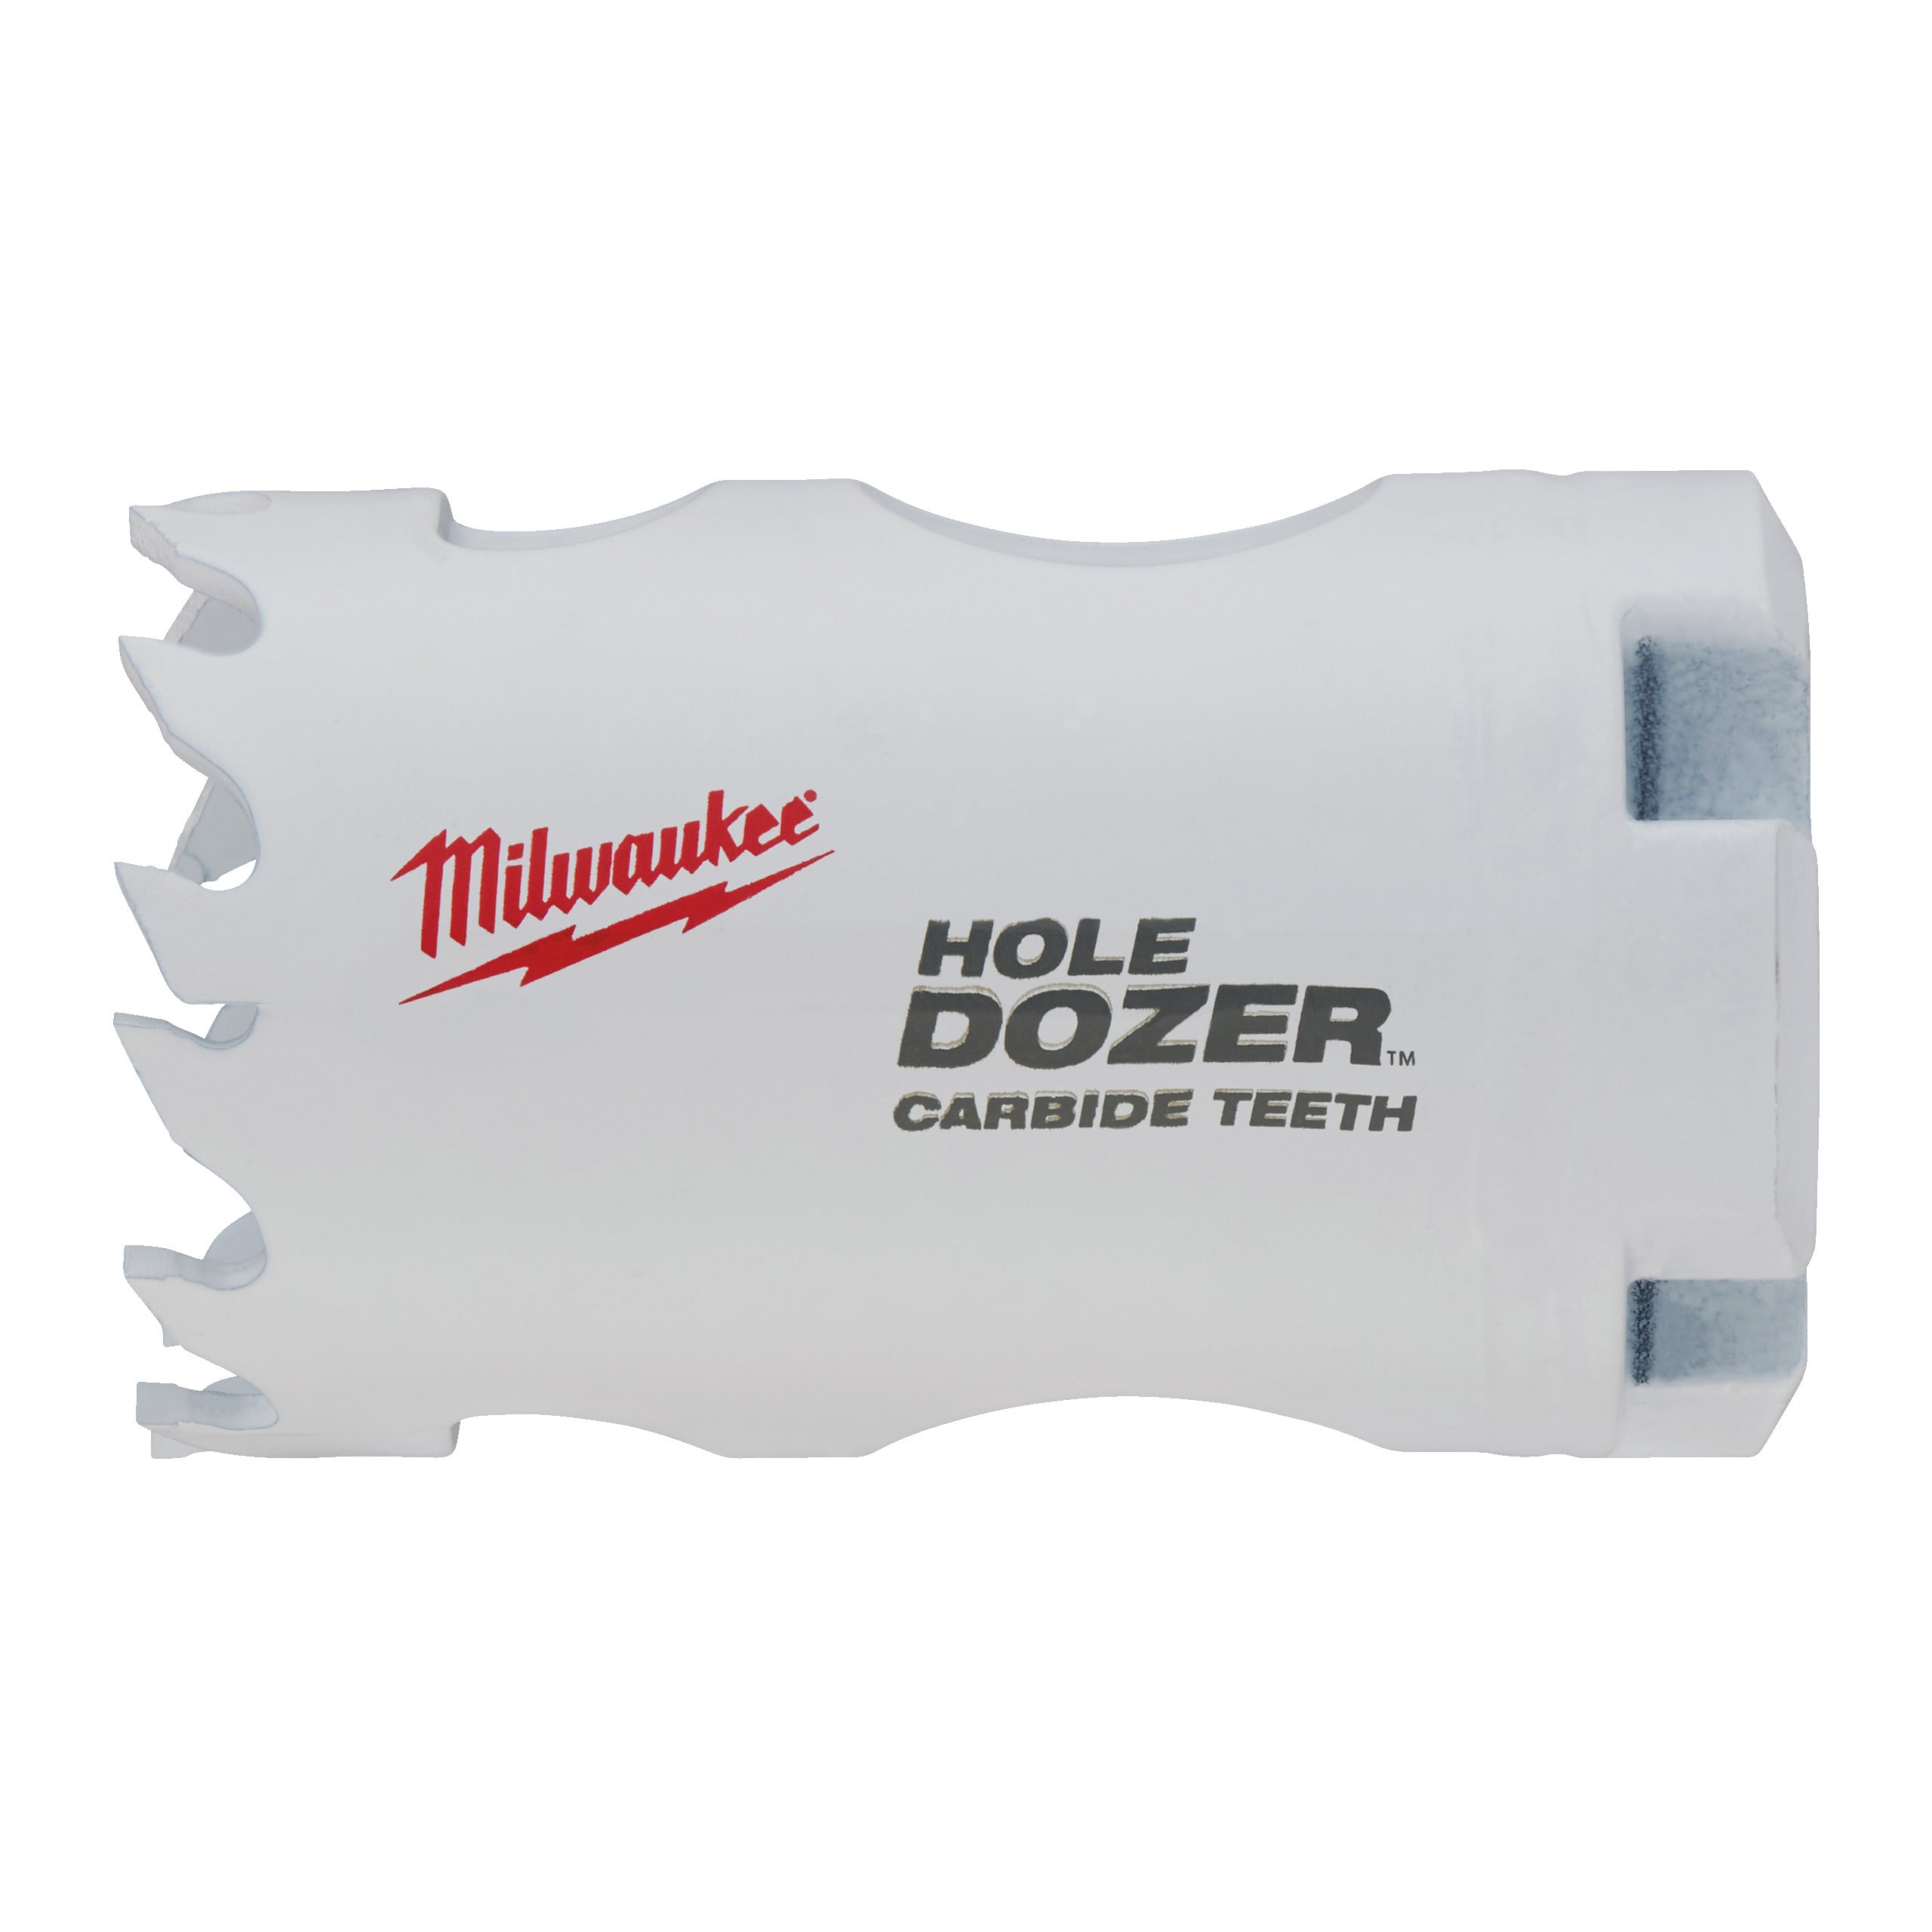 Carotă Hole Dozer cu dinți din carbură 33 mm Milwaukee, cod 49560711